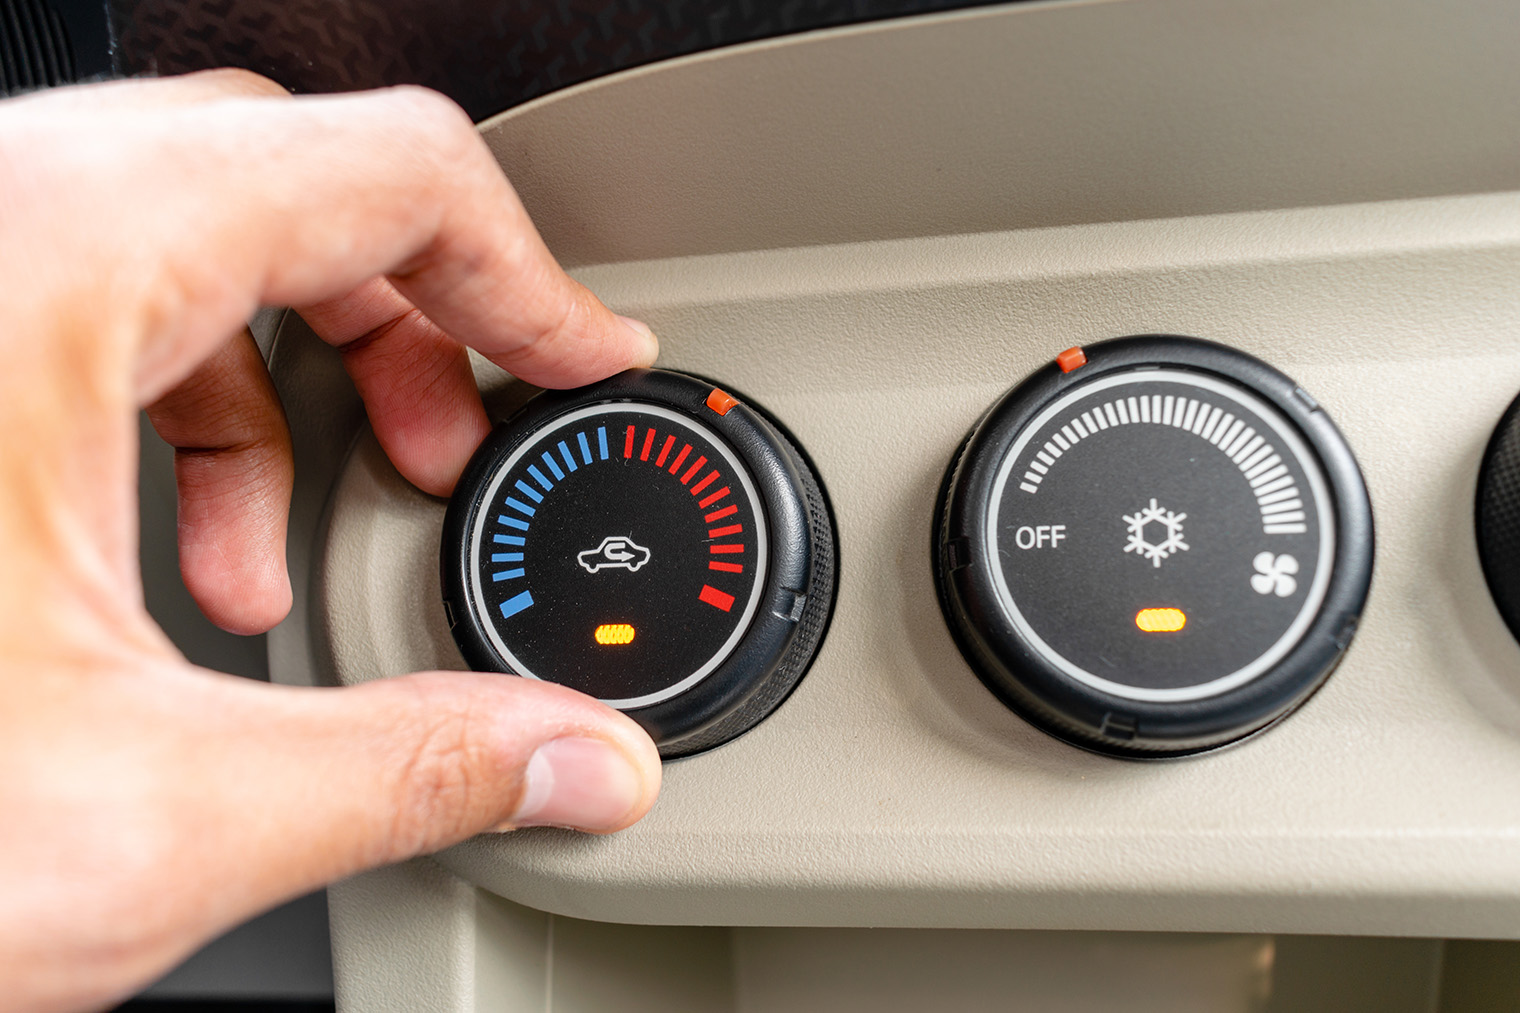 Кнопка включения кондиционера обозначается знаком снежинки или буквами A/C — Air Conditioner. Если в машине он есть, будет и отдельная кнопка. Фото: Mohamed Ali Gabr / Shutterstock